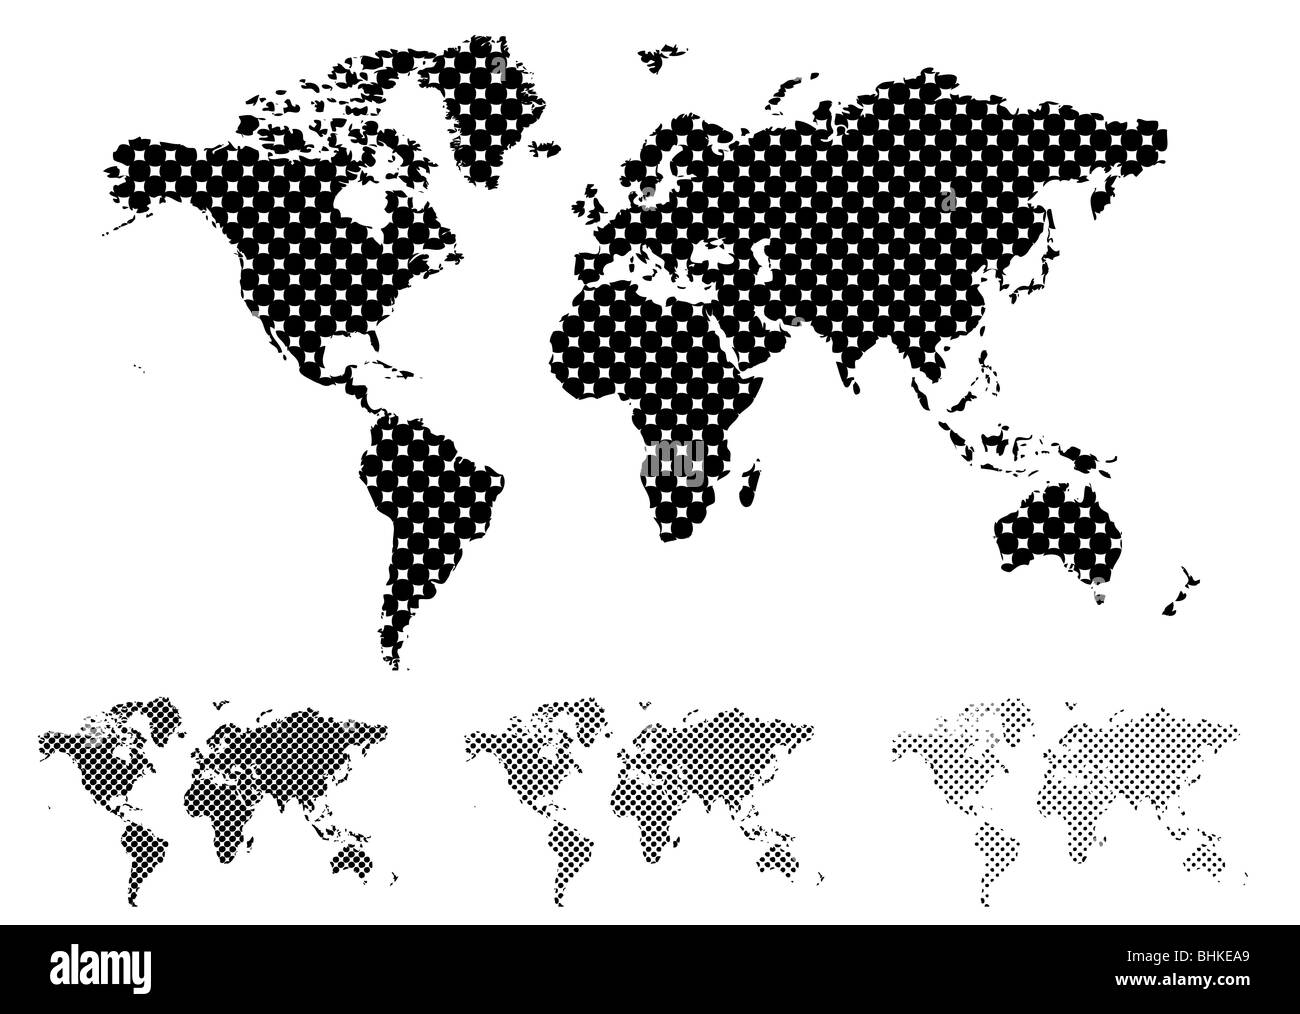 Bianco e nero mappa di mezzitoni del mondo con diversi valori di tinta Foto Stock